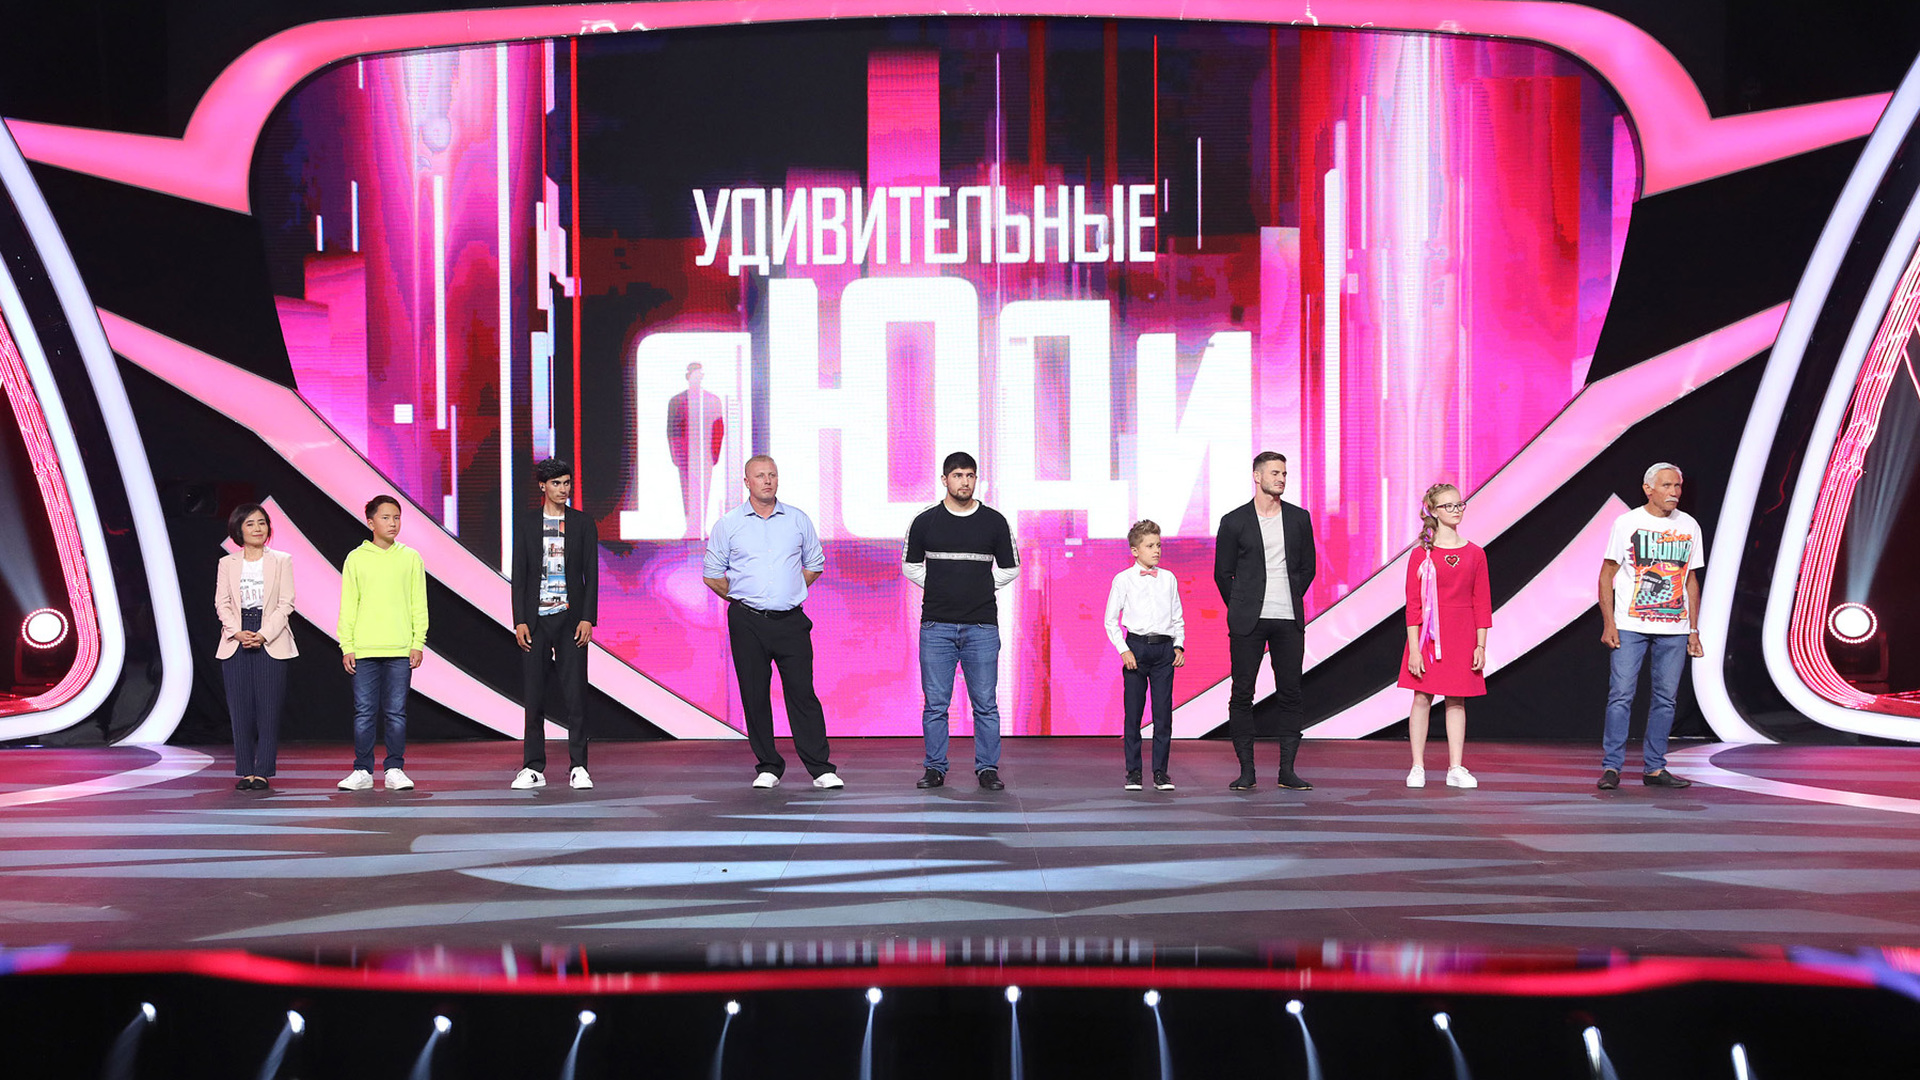 Передача удивительные люди 7. Шоу удивительные люди. Удивительные люди жюри. Удивительные люди России.